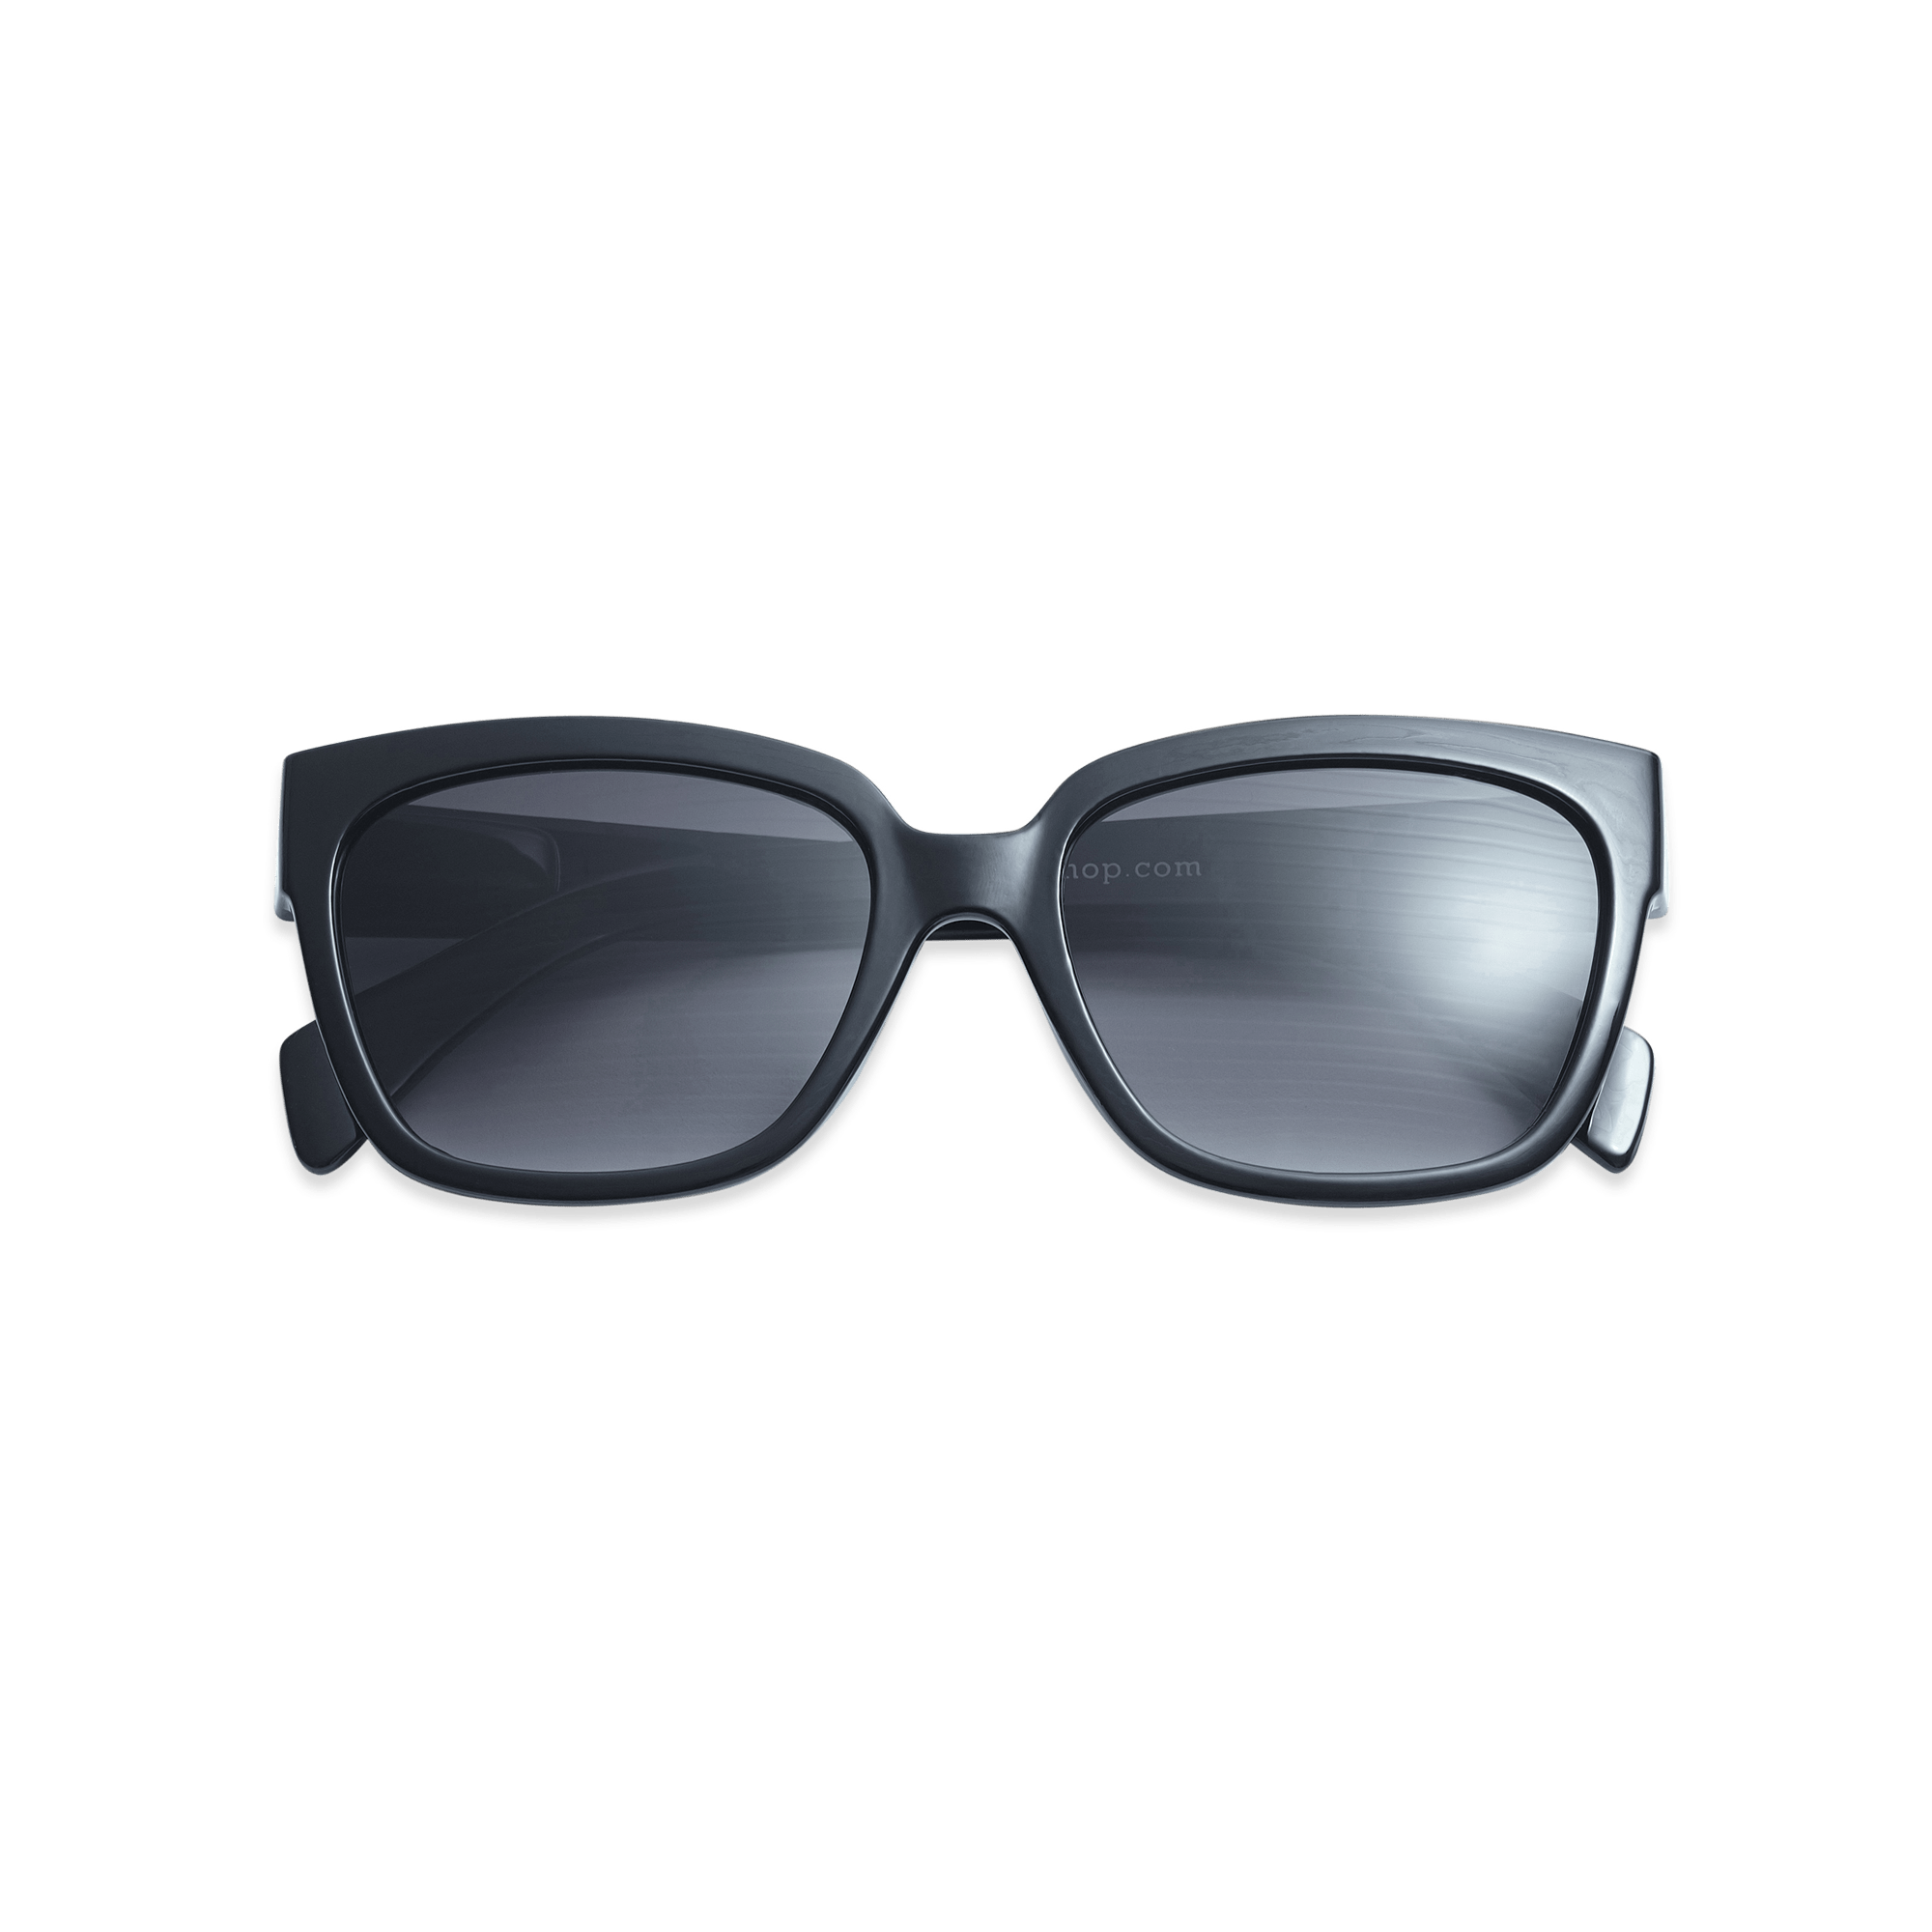 Sonnenbrillen Mood - black aus Have A Look